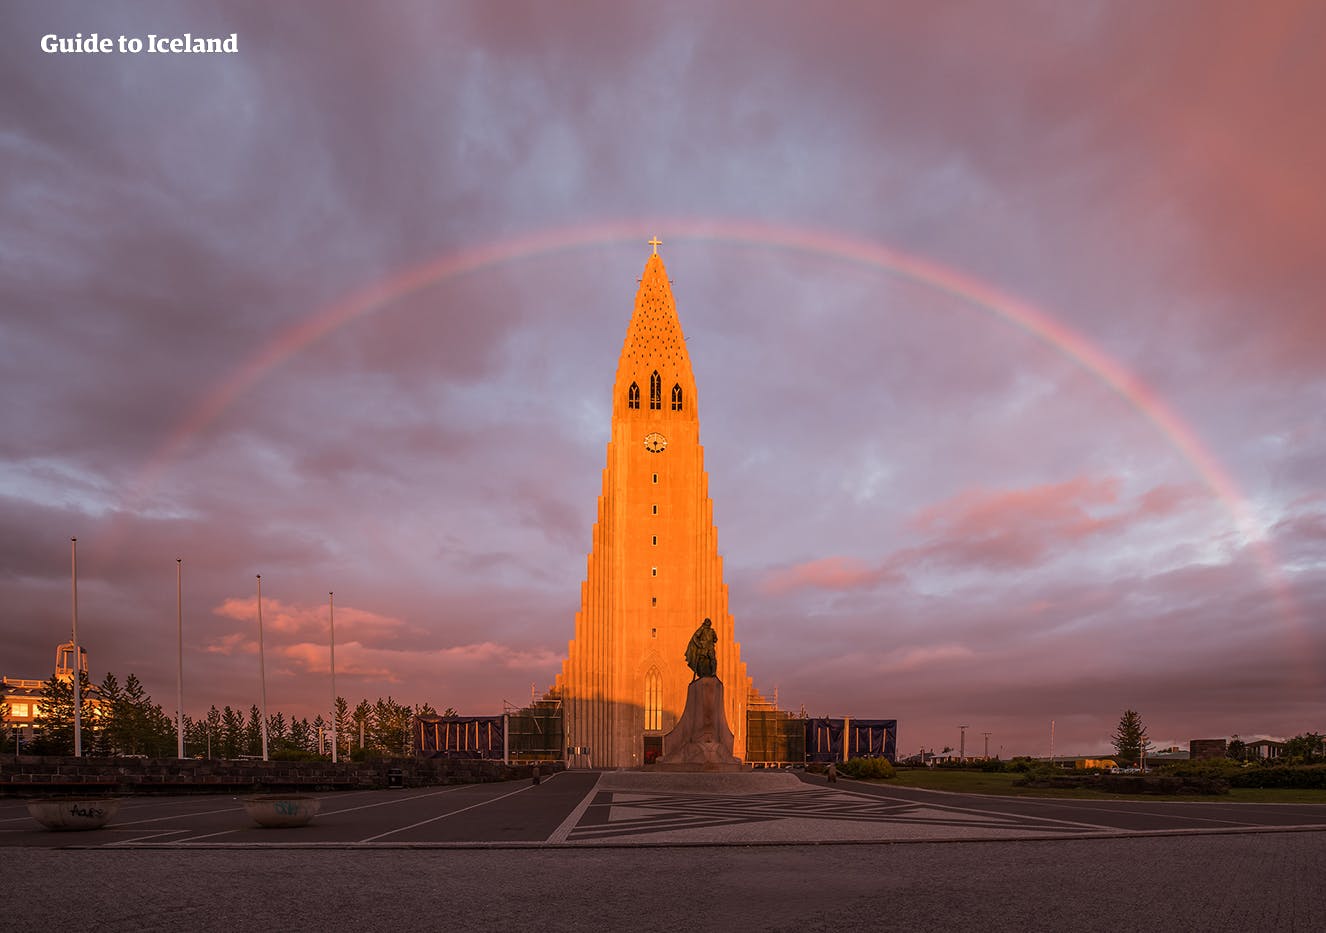 Witamy w Reykjaviku, jednym z najbardziej zróżnicowanych miast w Europie.